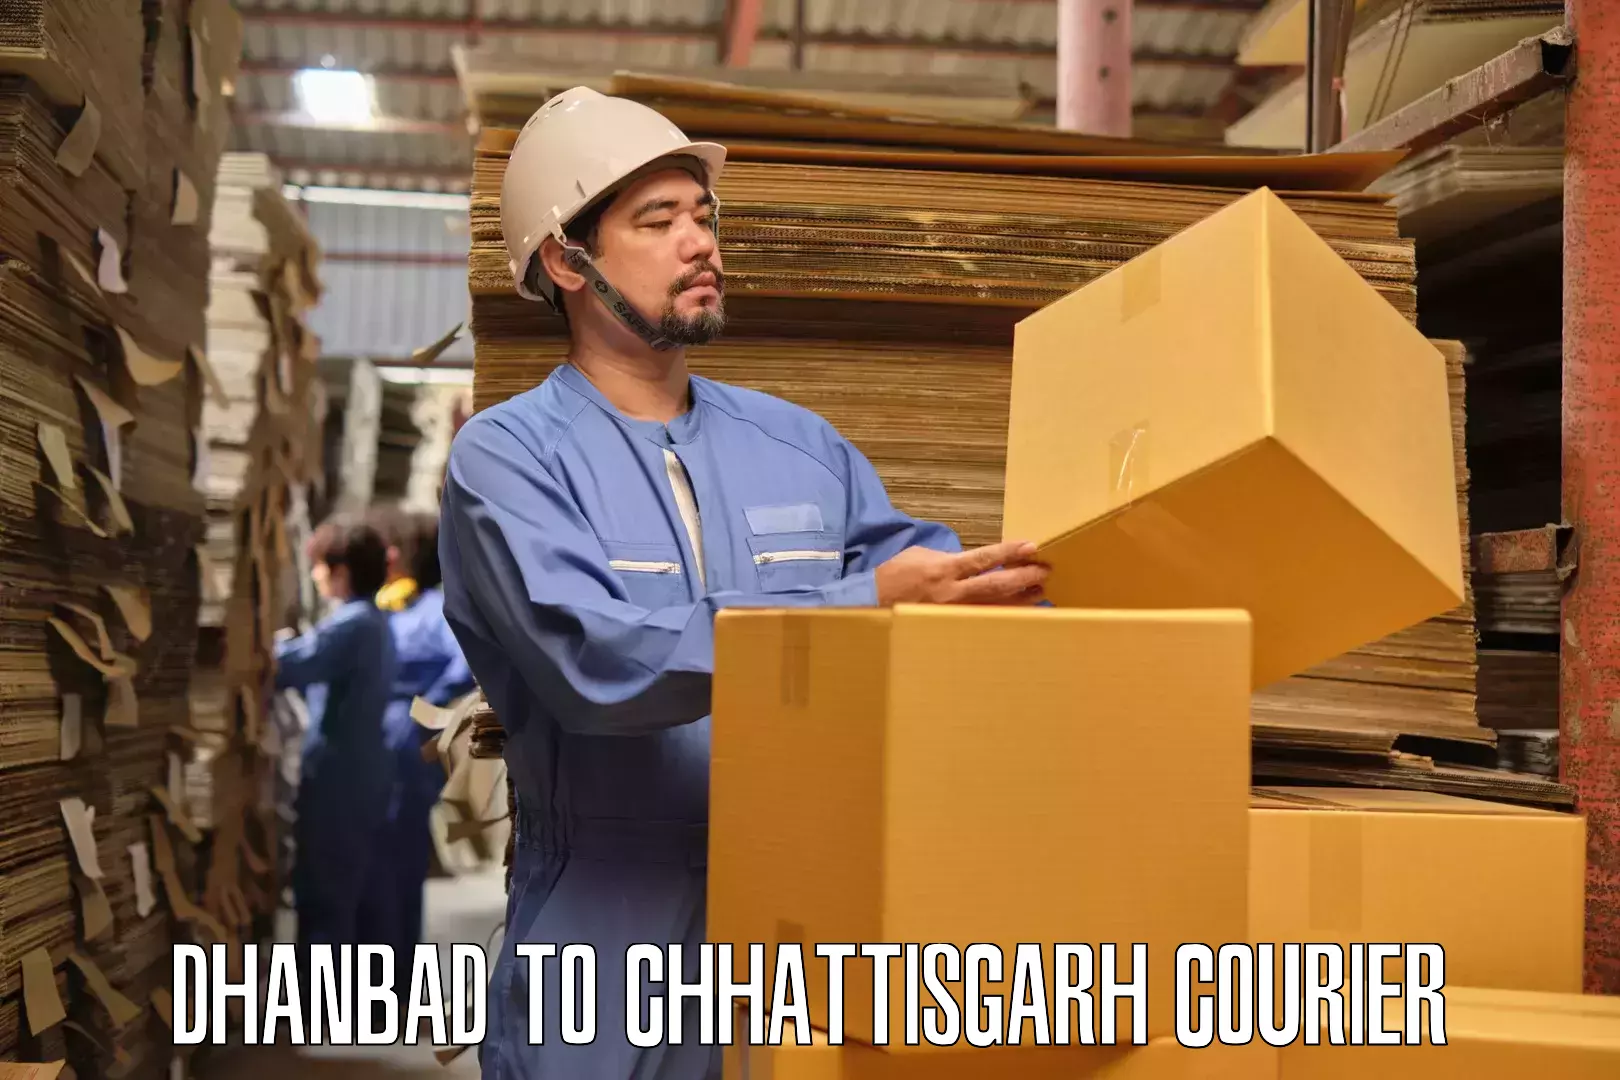 Furniture delivery service Dhanbad to Wadrafnagar